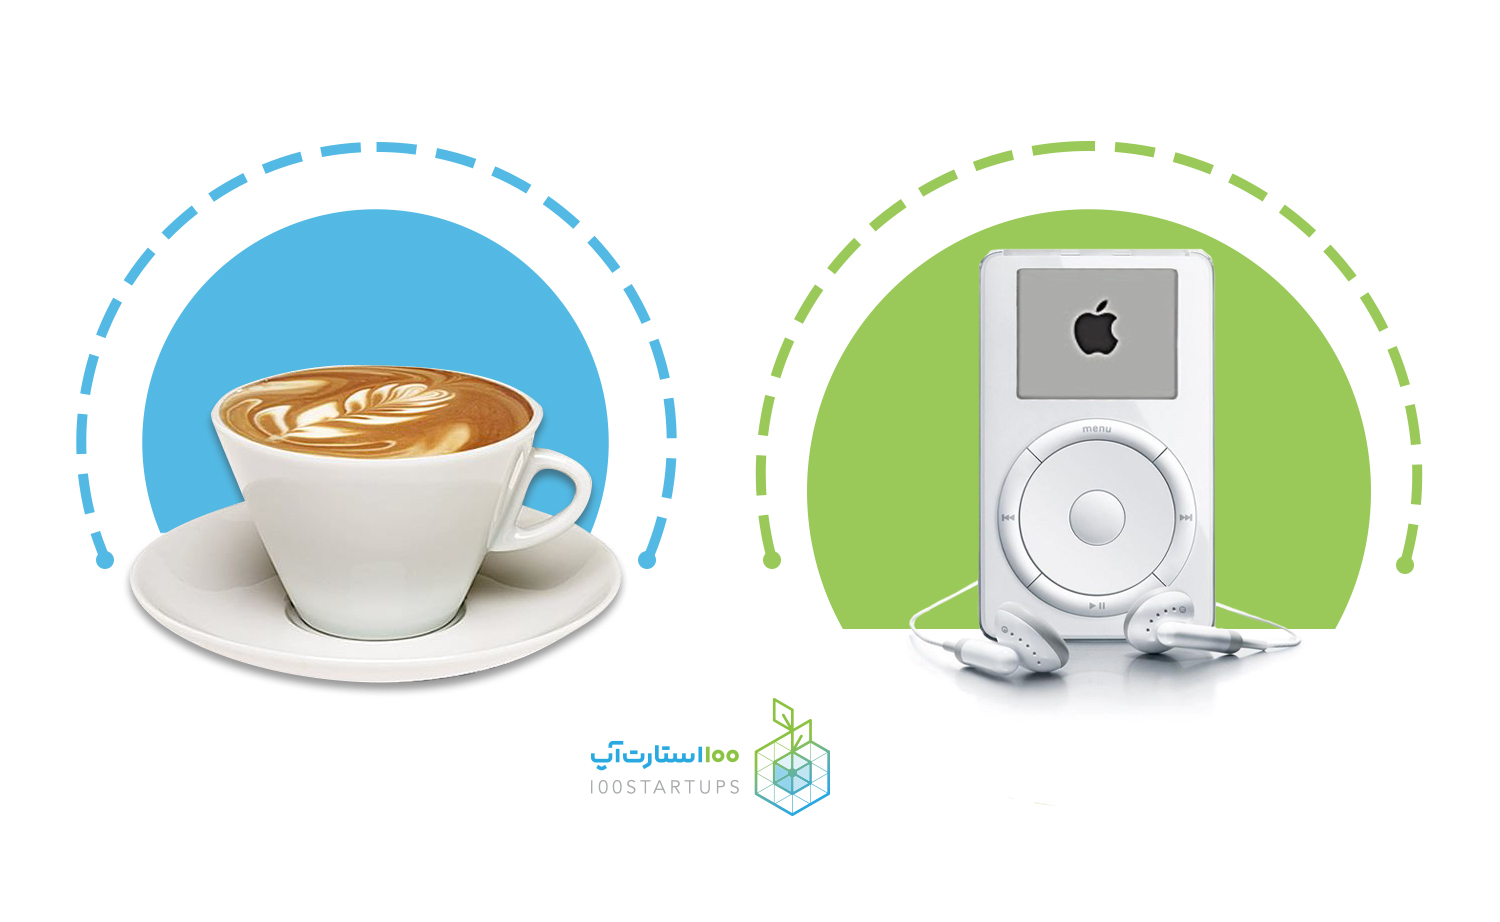 کتاب طرح بازاریابی یک صفحه‌ای در سایت 100استارت‌آپ برای توضیح ساخت پیام تبلیغاتی فنجان و قهوه نشان می دهد.